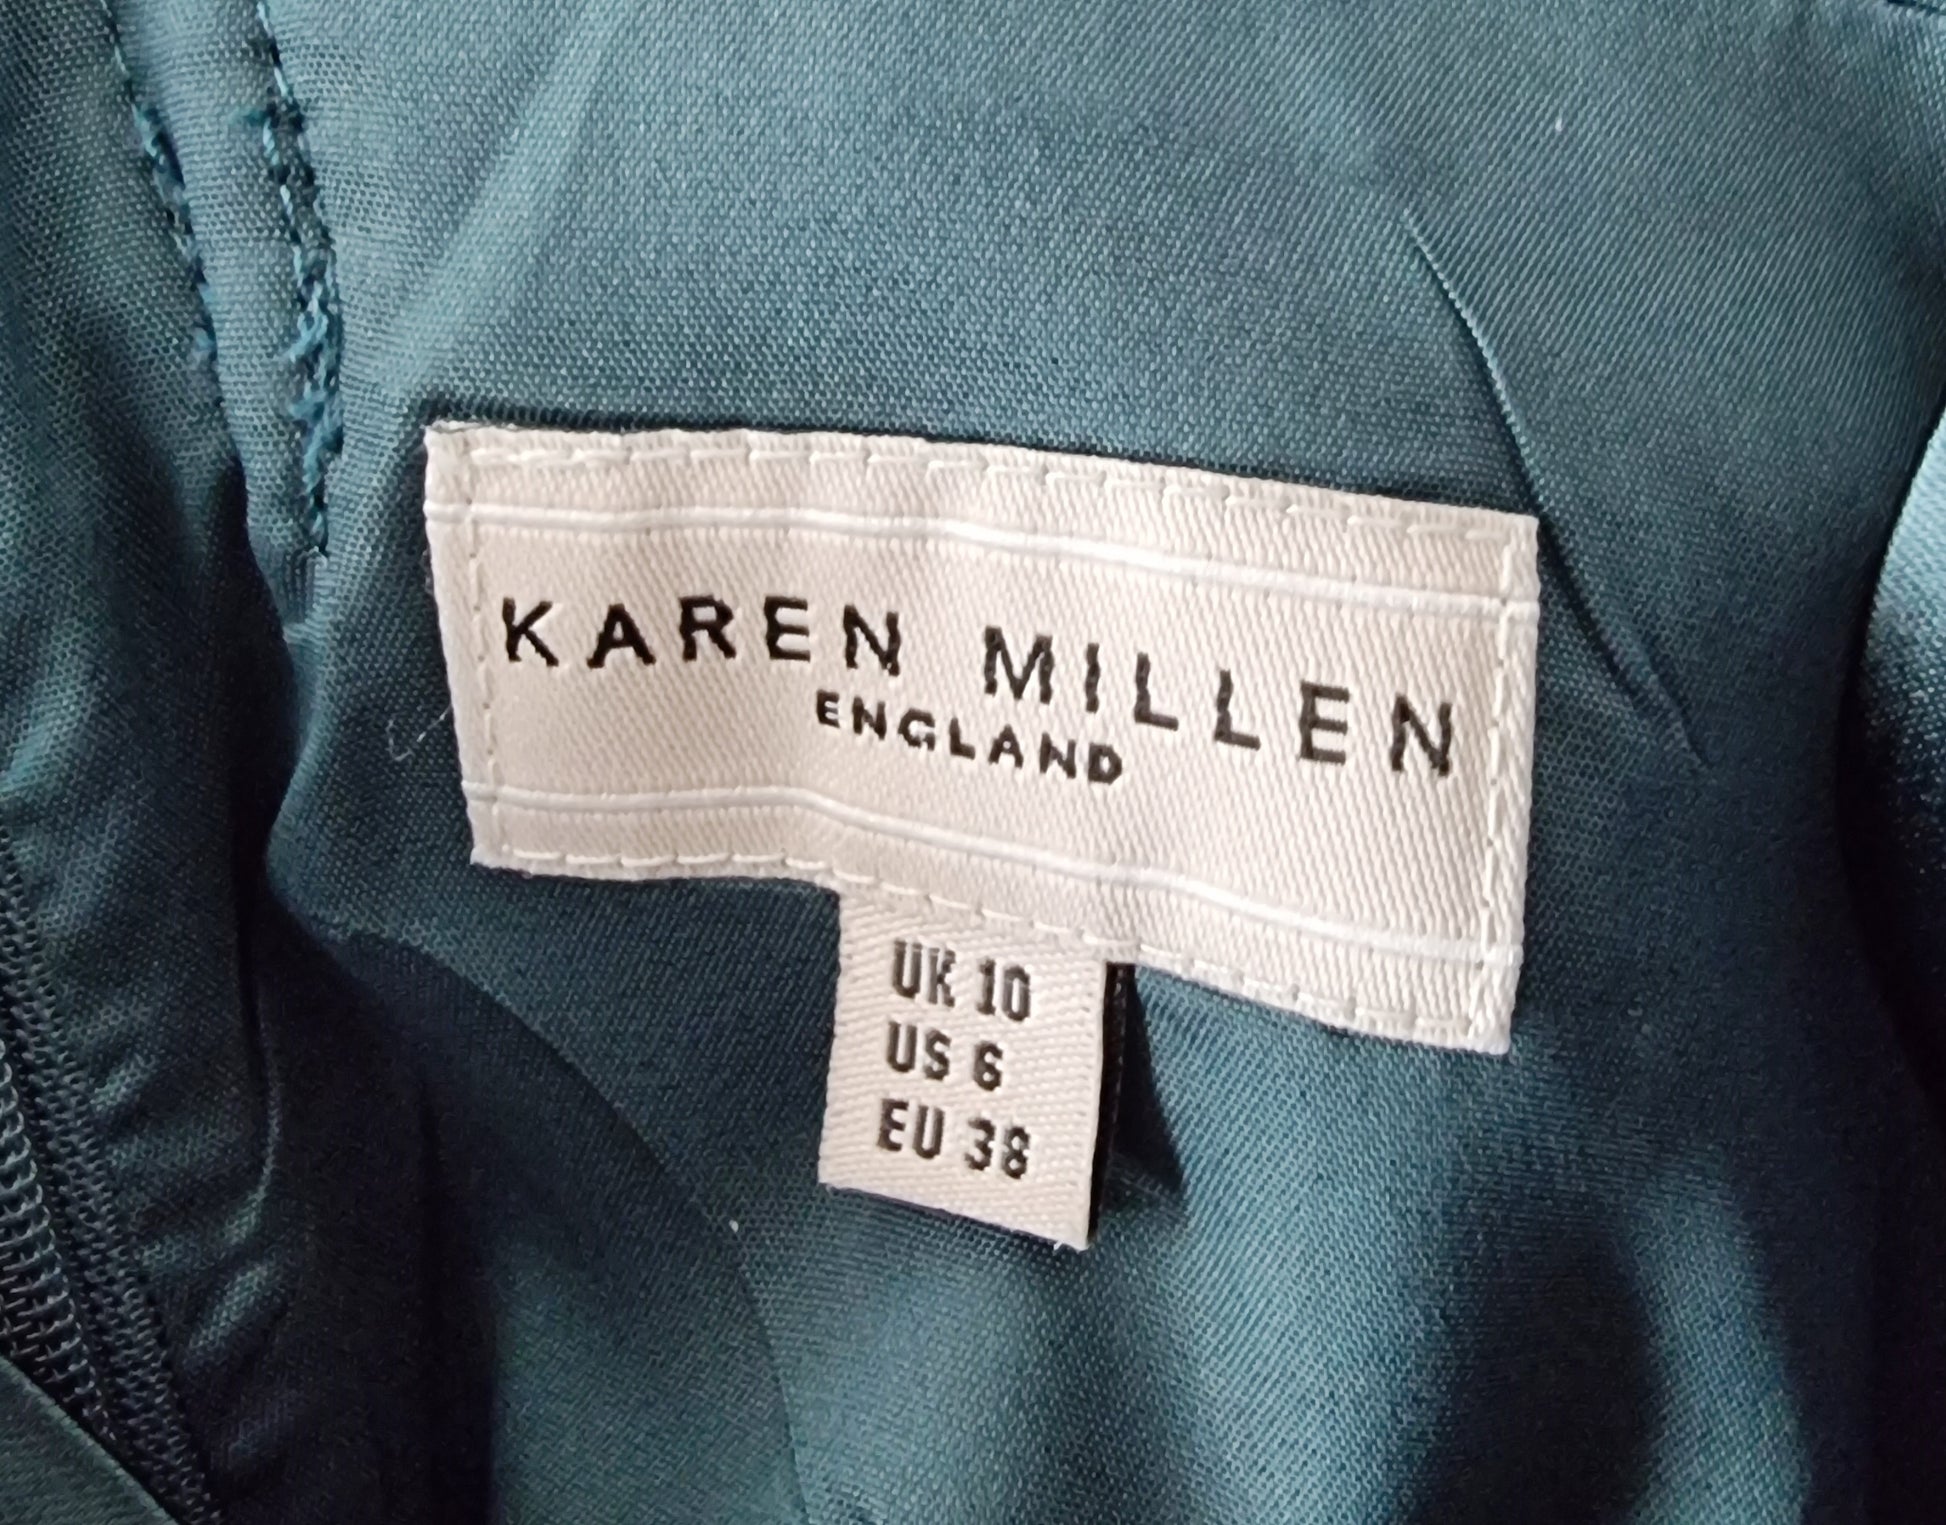 Karen Millen Emerald Green Satin Look Occasion Dress UK 10 US 6 EU 36 Timeless Fashions